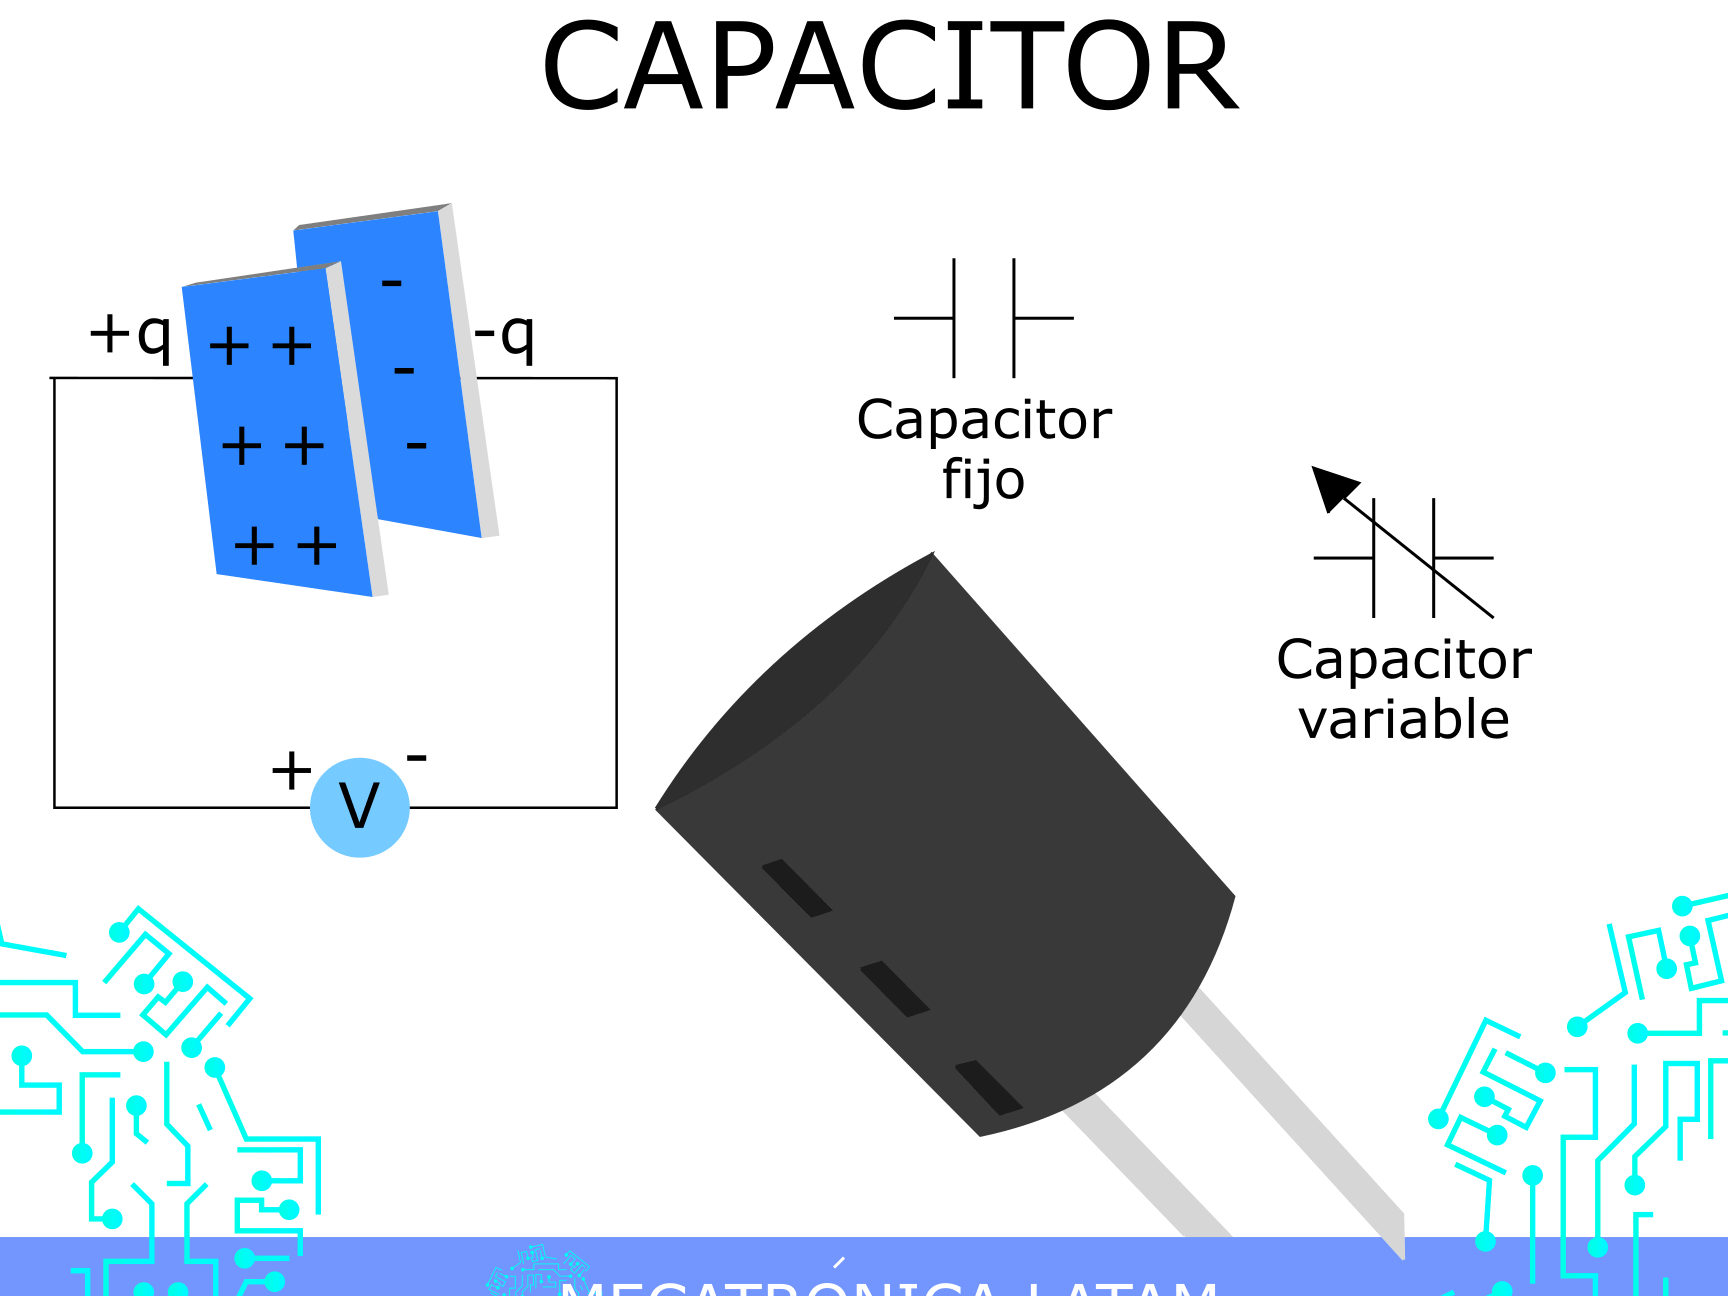 Kapasitor menyimpan energi dalam bentuk muatan listrik